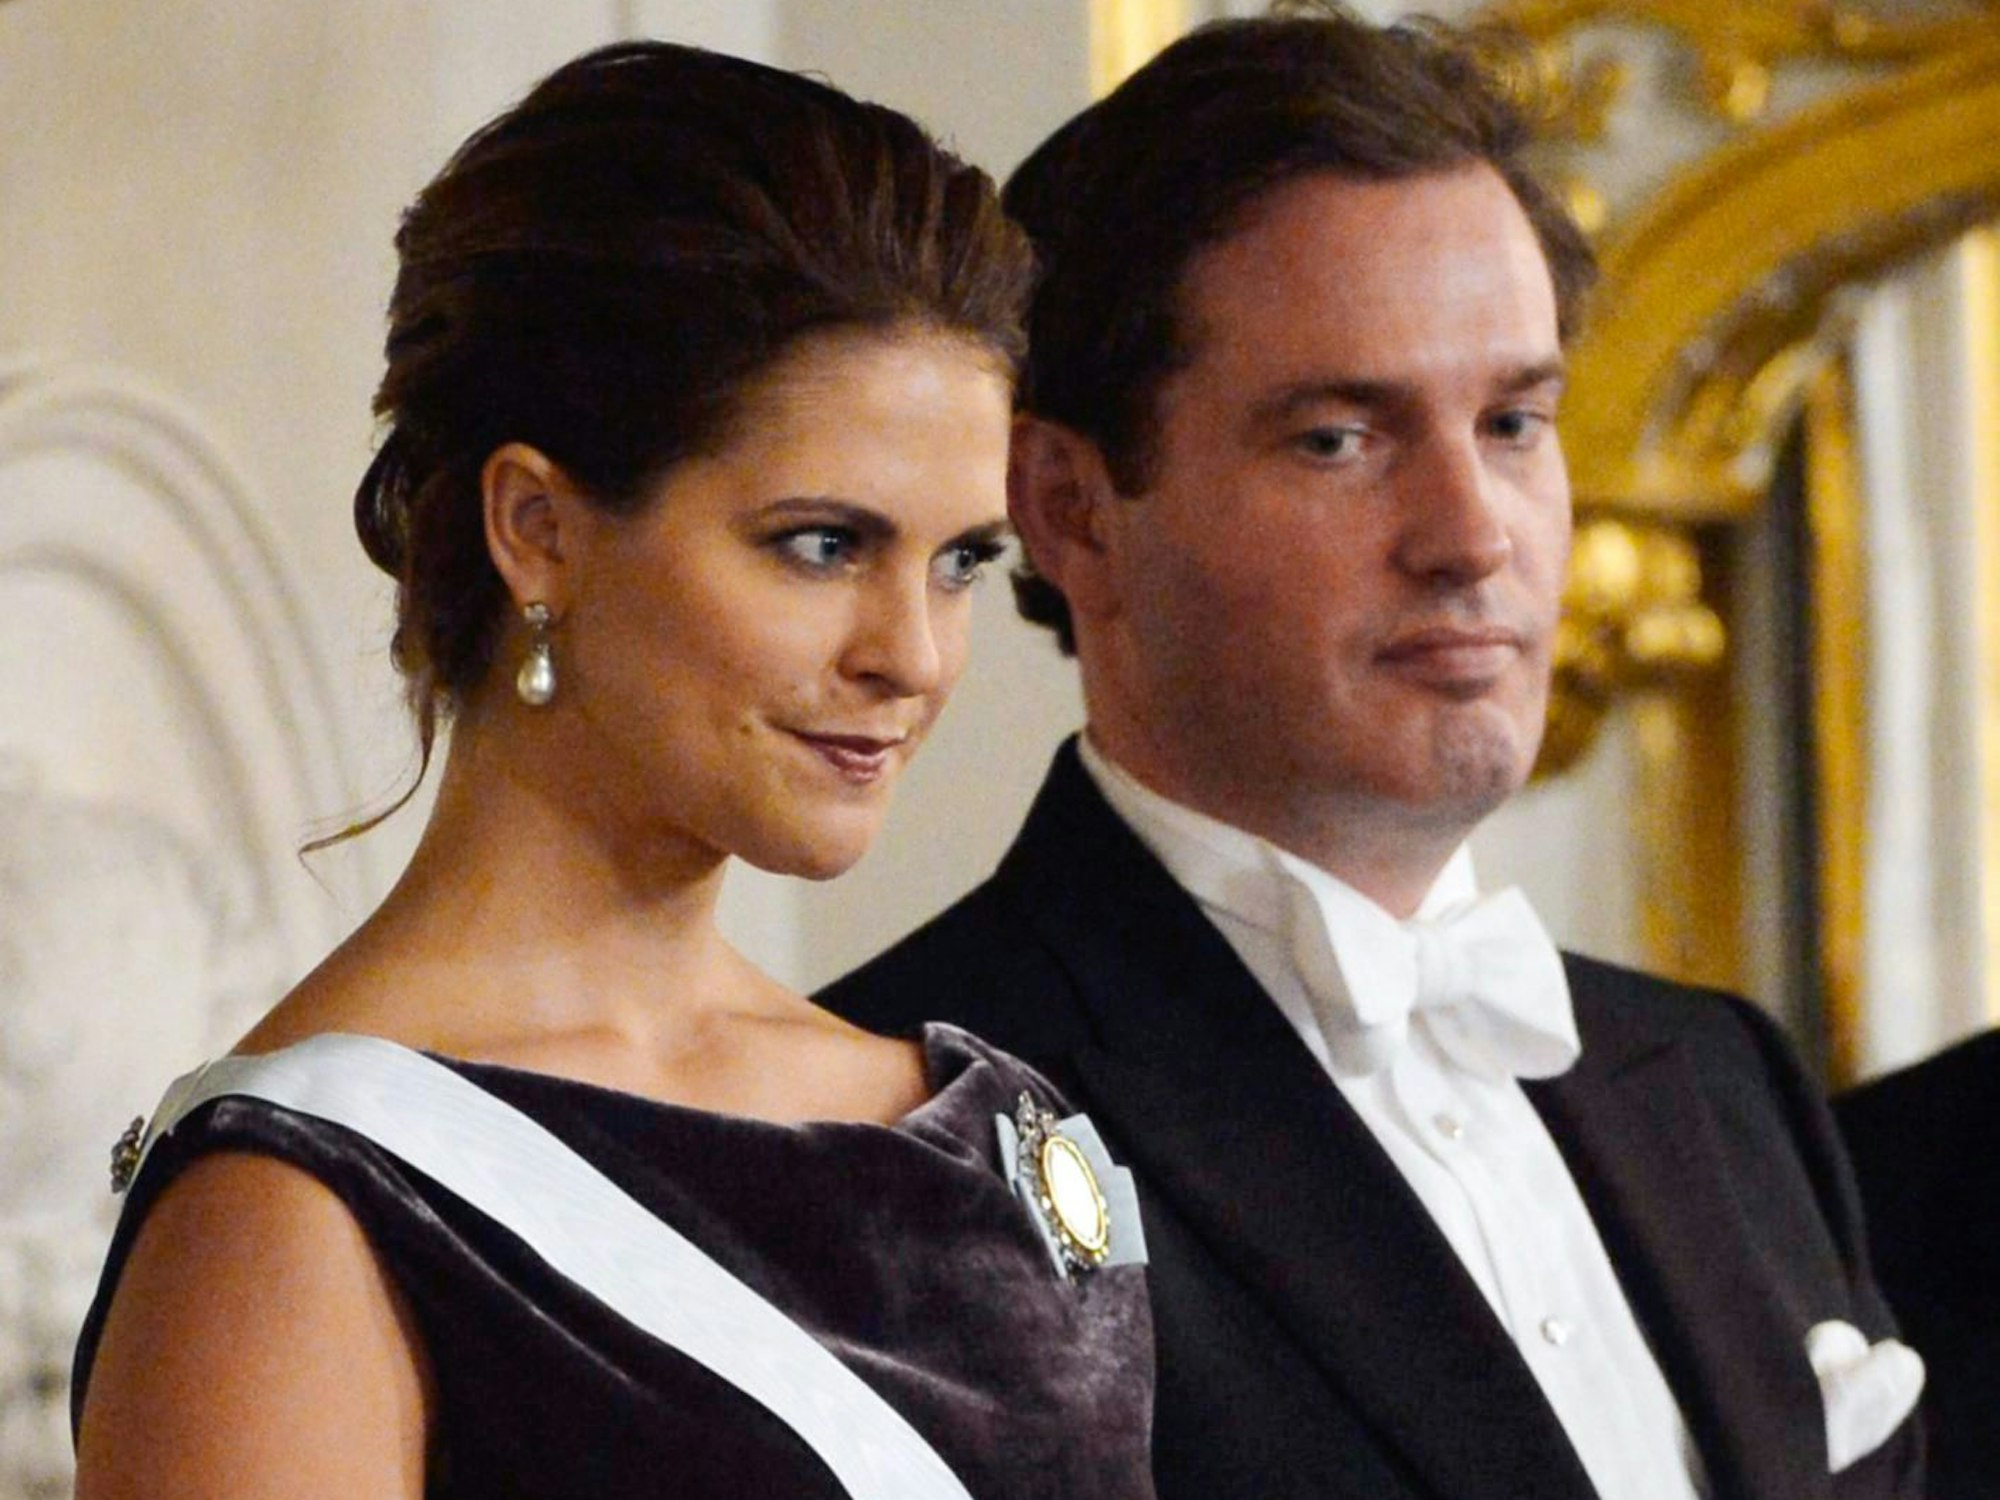 Mit dem britisch-amerikanischen Geschäftsmann Chris O'Neill ist Madeleine seit 2013 verheiratet. Das Paar hat drei Kinder: Prinzessin Leonore (*20. Februar 2014), Prinz Nicolas (*15. Juni 2015) und Prinzessin Adrienne (* 9. März 2018).